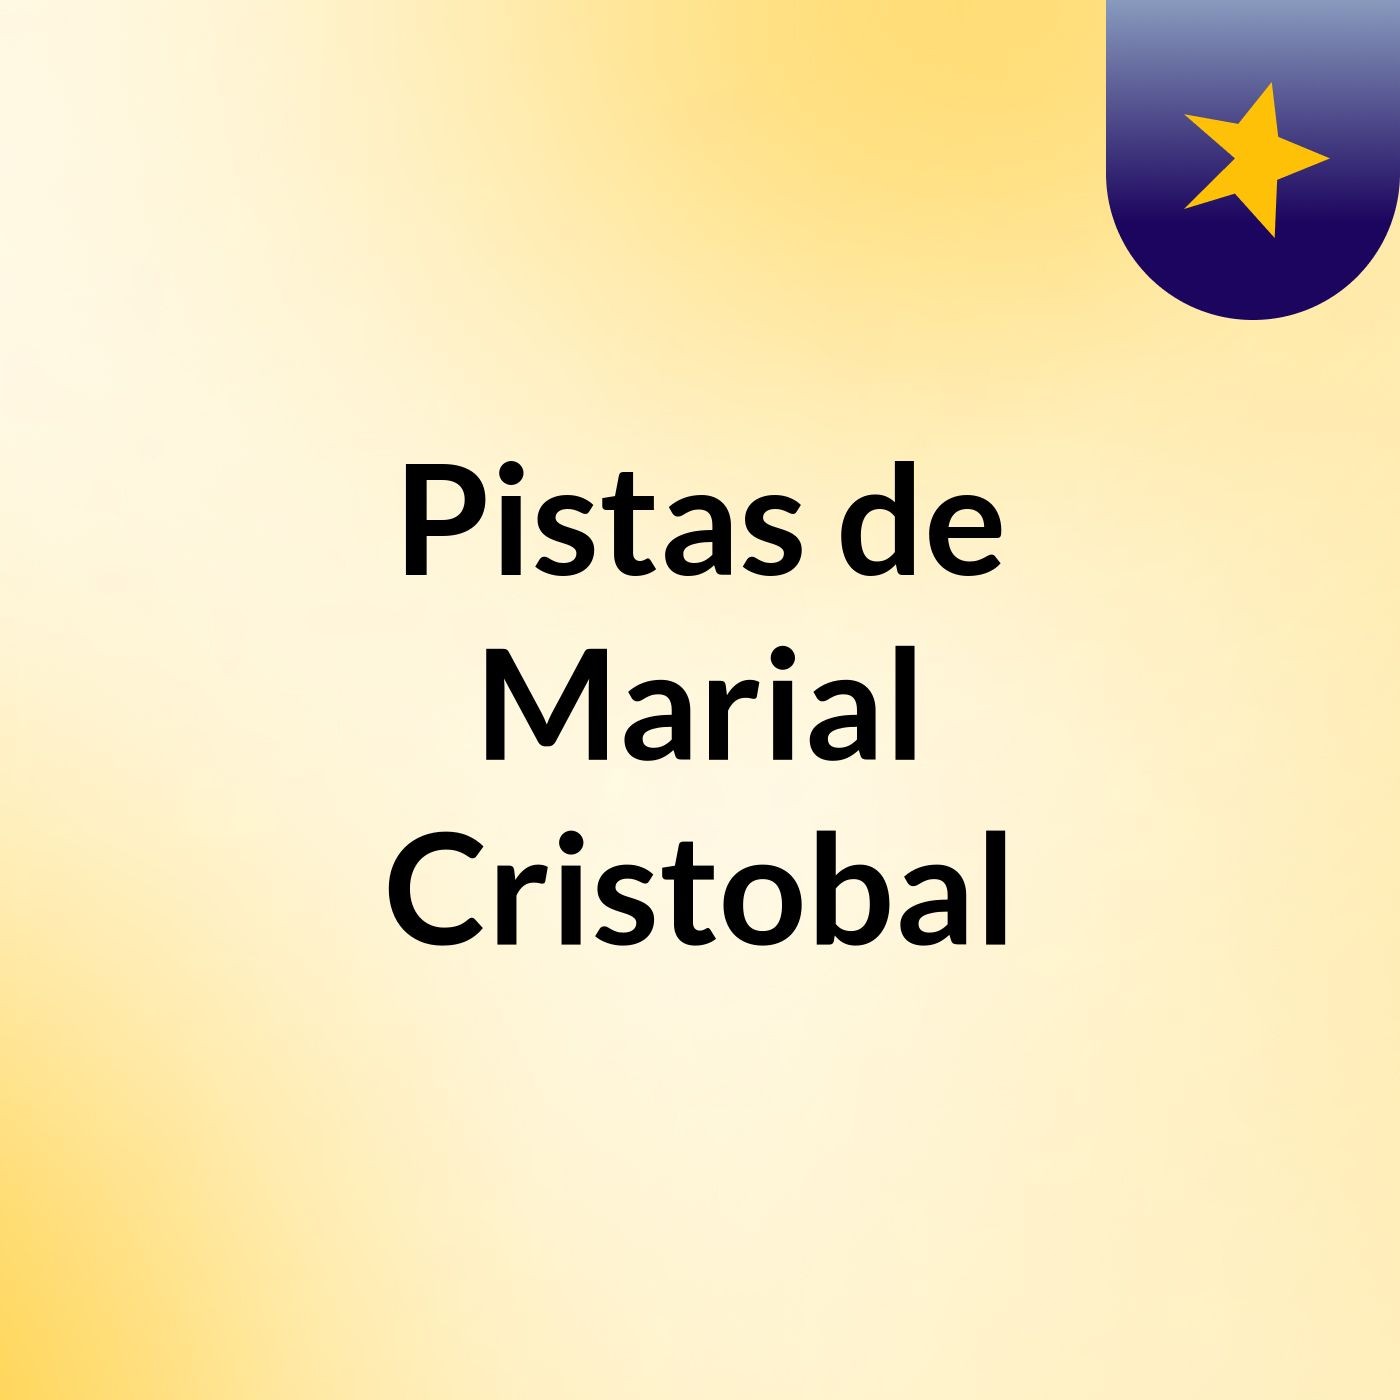 Pistas de Marial Cristobal